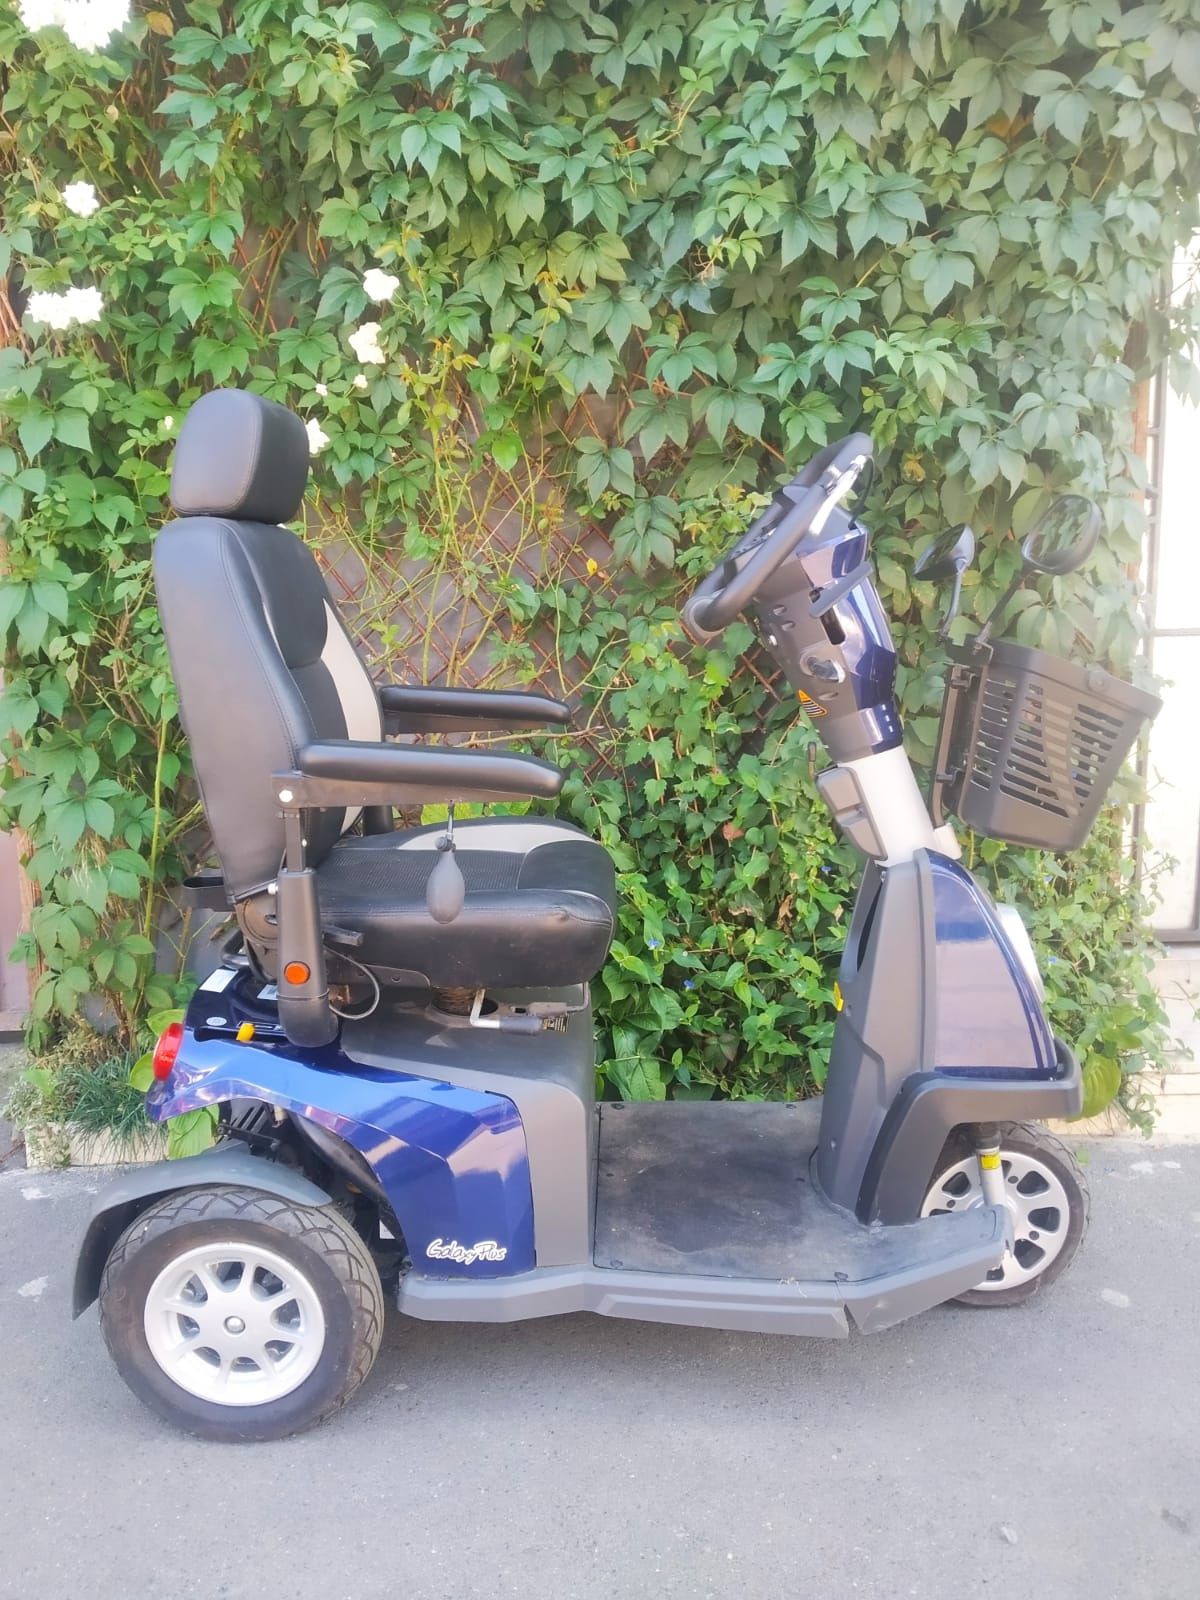 Vând scuter electric pt persoane dizabilități